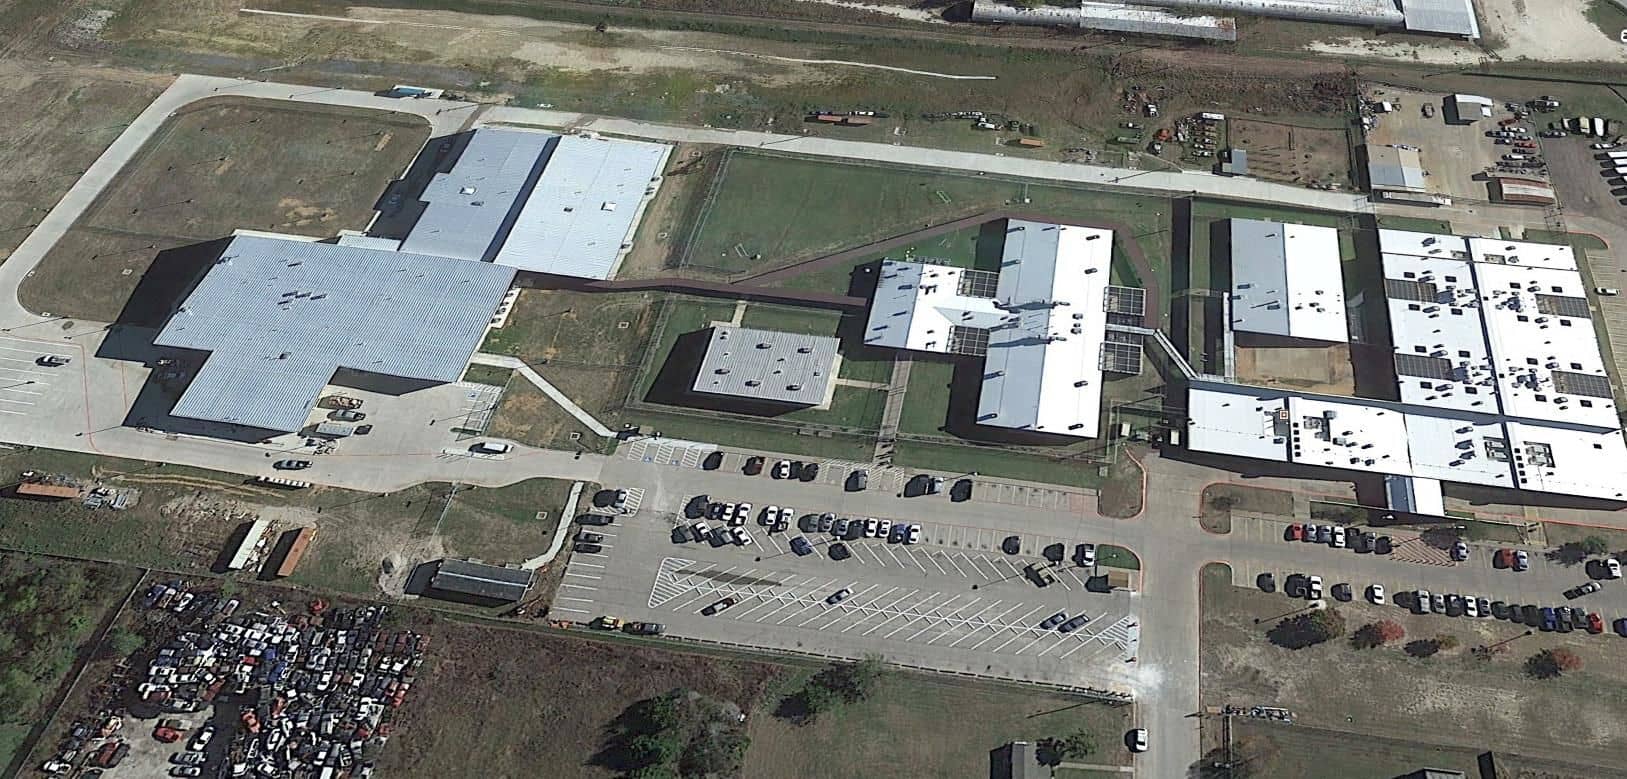 Johnson County TX Correctional Facility - LaSalle